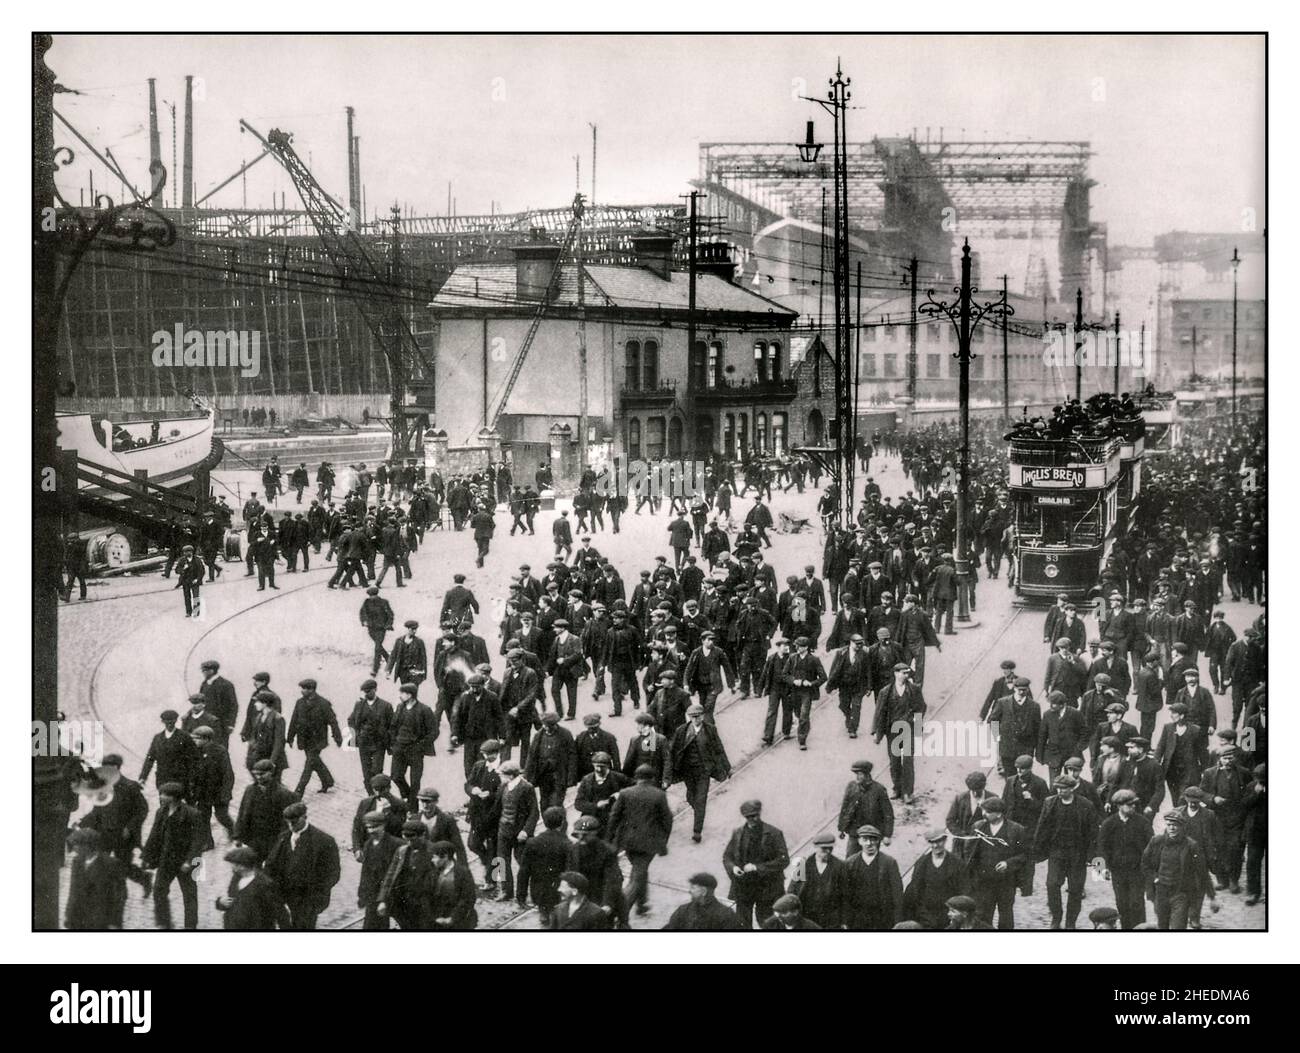 RMS Titanic im Bau. Arbeiter auf der Werft, die Zeit von Harland & Wolff, Belfast, abhauen. RMS Titanic. Wird im Hintergrund gebaut Datum 1910 Stockfoto